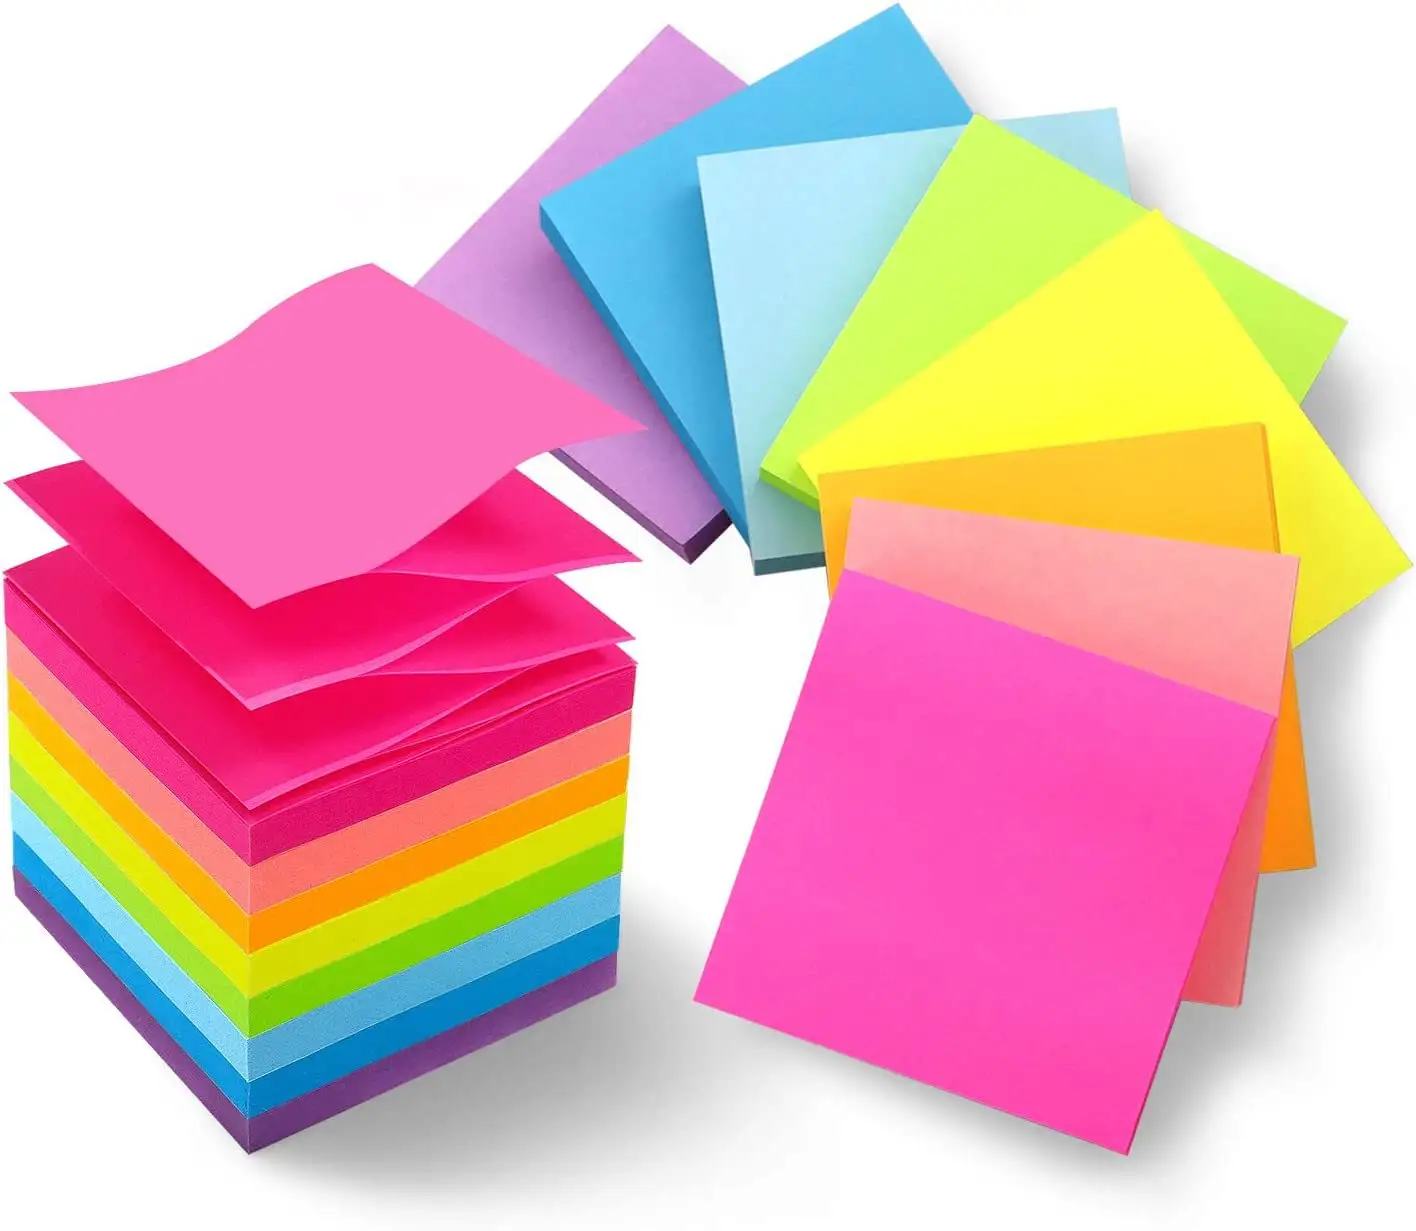 Großhandel Custom Super Sticky Notes Schul bedarf und Büro produkte Memo Pad Haft notizen 3x3 Papier aufkleber